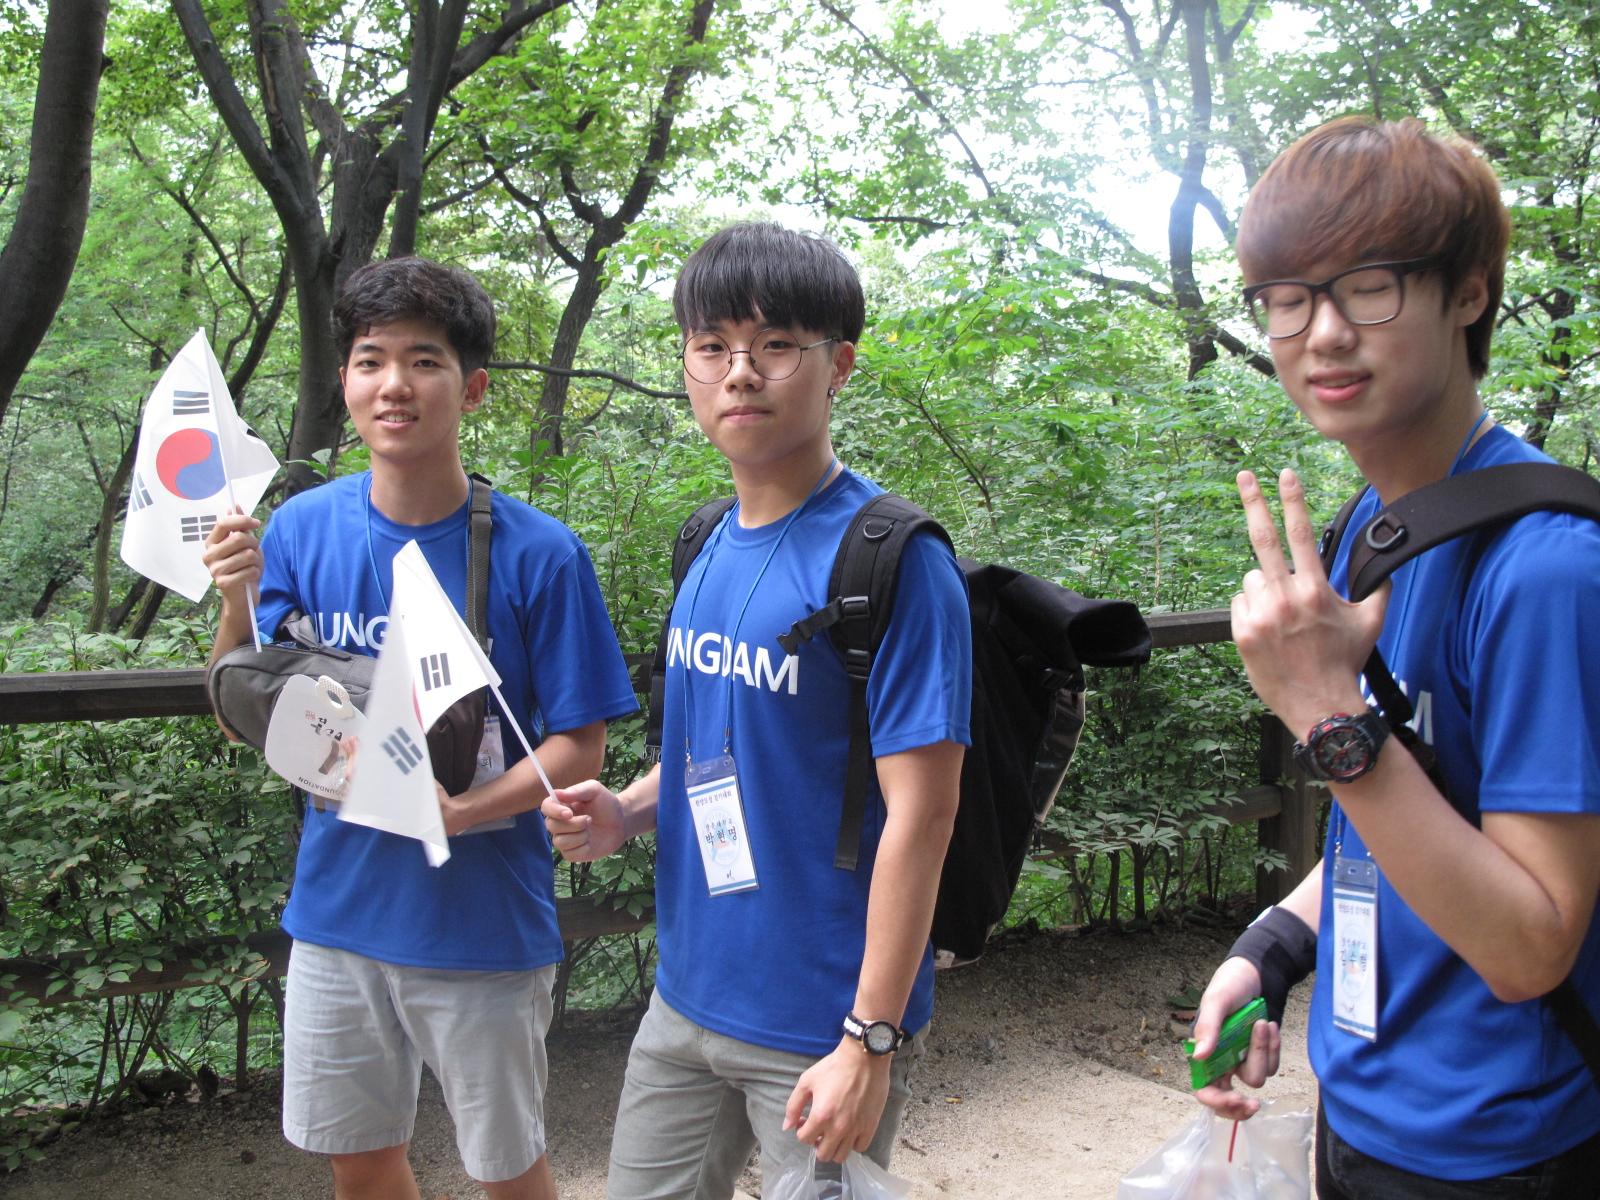 아산장학생은 나눔문화 확산을 위해 8.13일과 14일 한양도성 걷기 행사를 개최했습니다.3